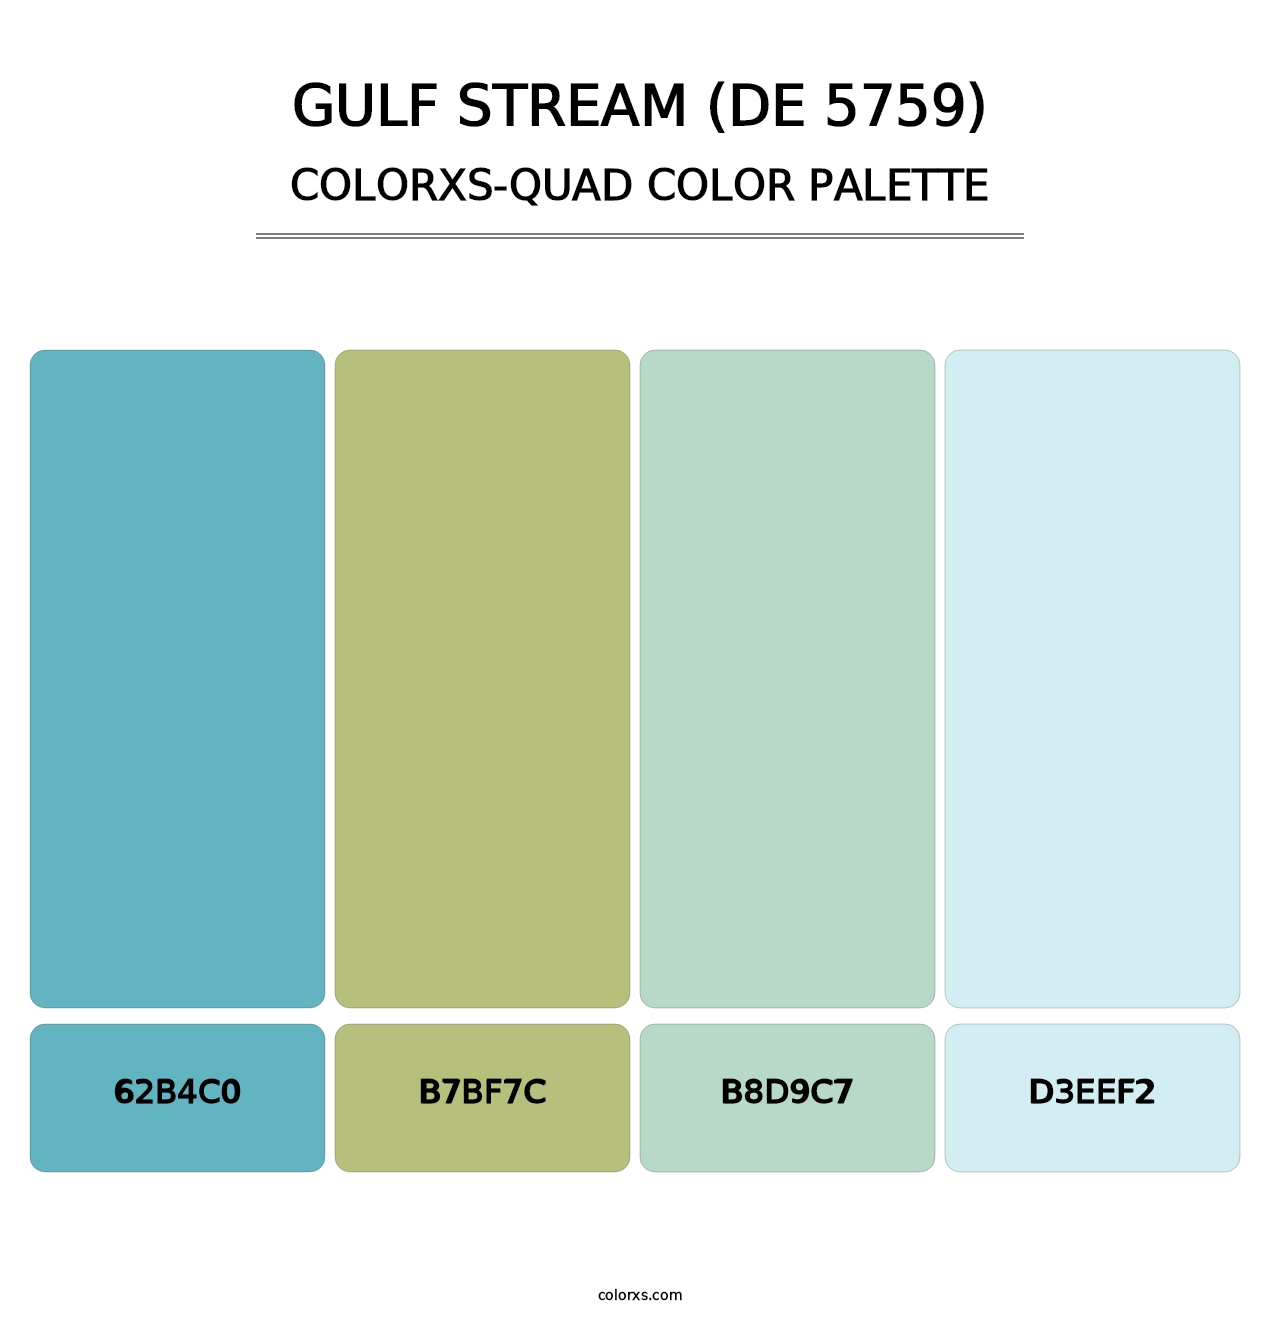 Gulf Stream (DE 5759) - Colorxs Quad Palette